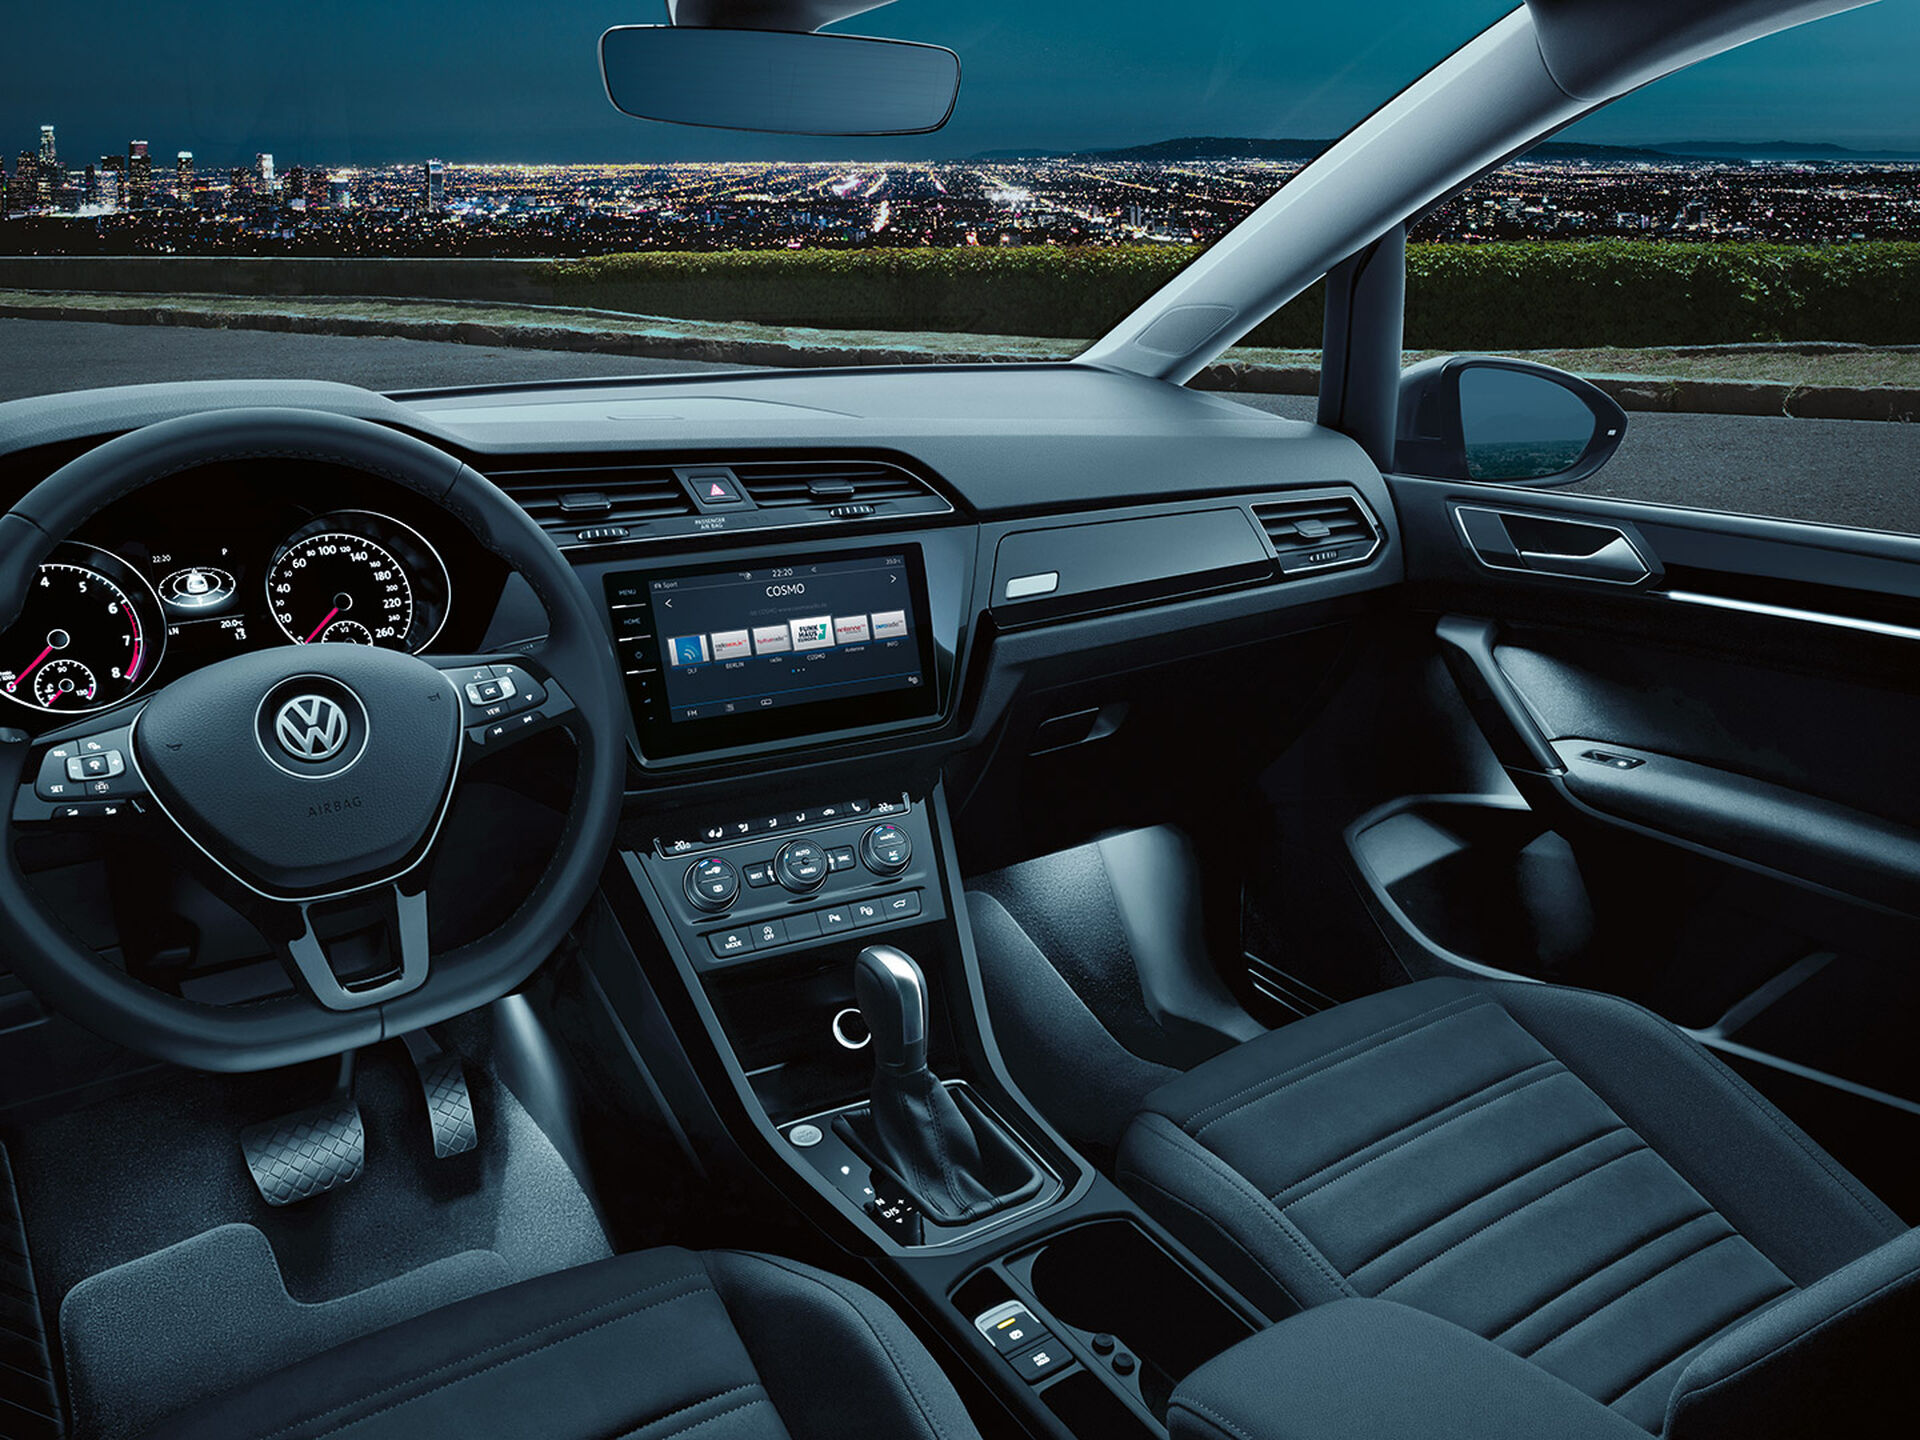 Habitáculo de um VW Touran num ambiente escuro com luz ambiente ligada